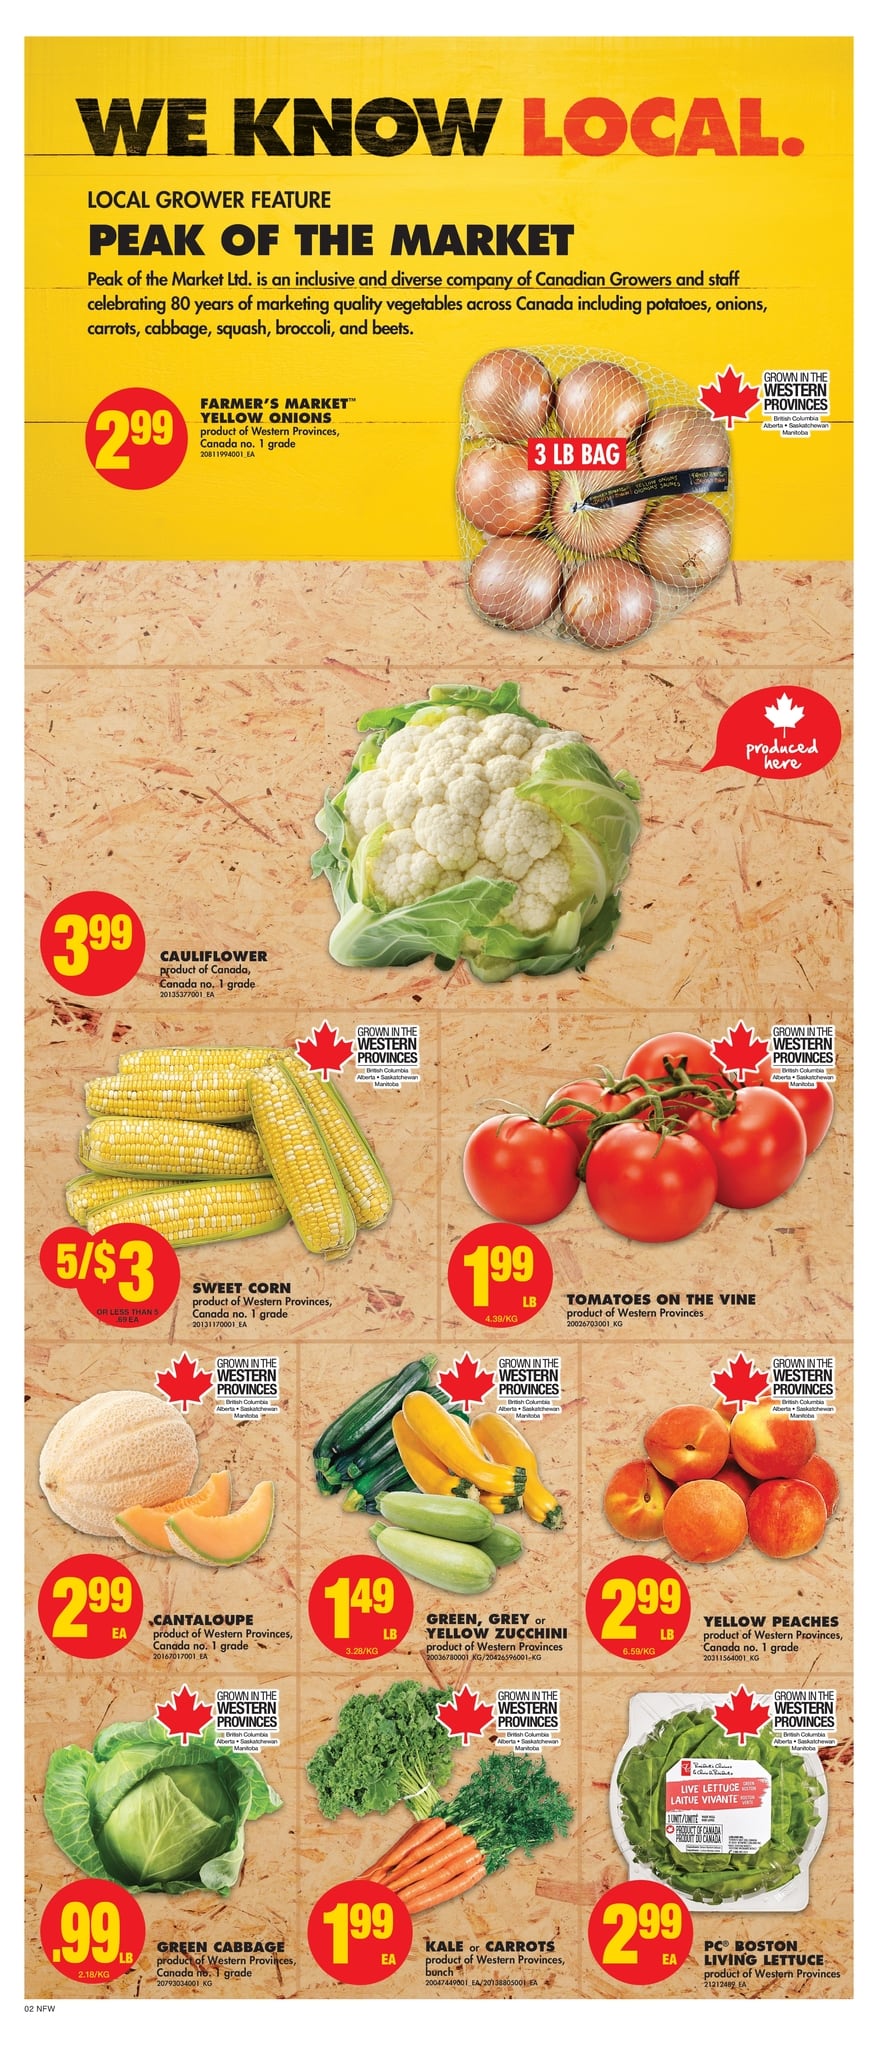 No Frills (Western Canada, Northern Ontario) - Weekly Flyer Specials - Page 2